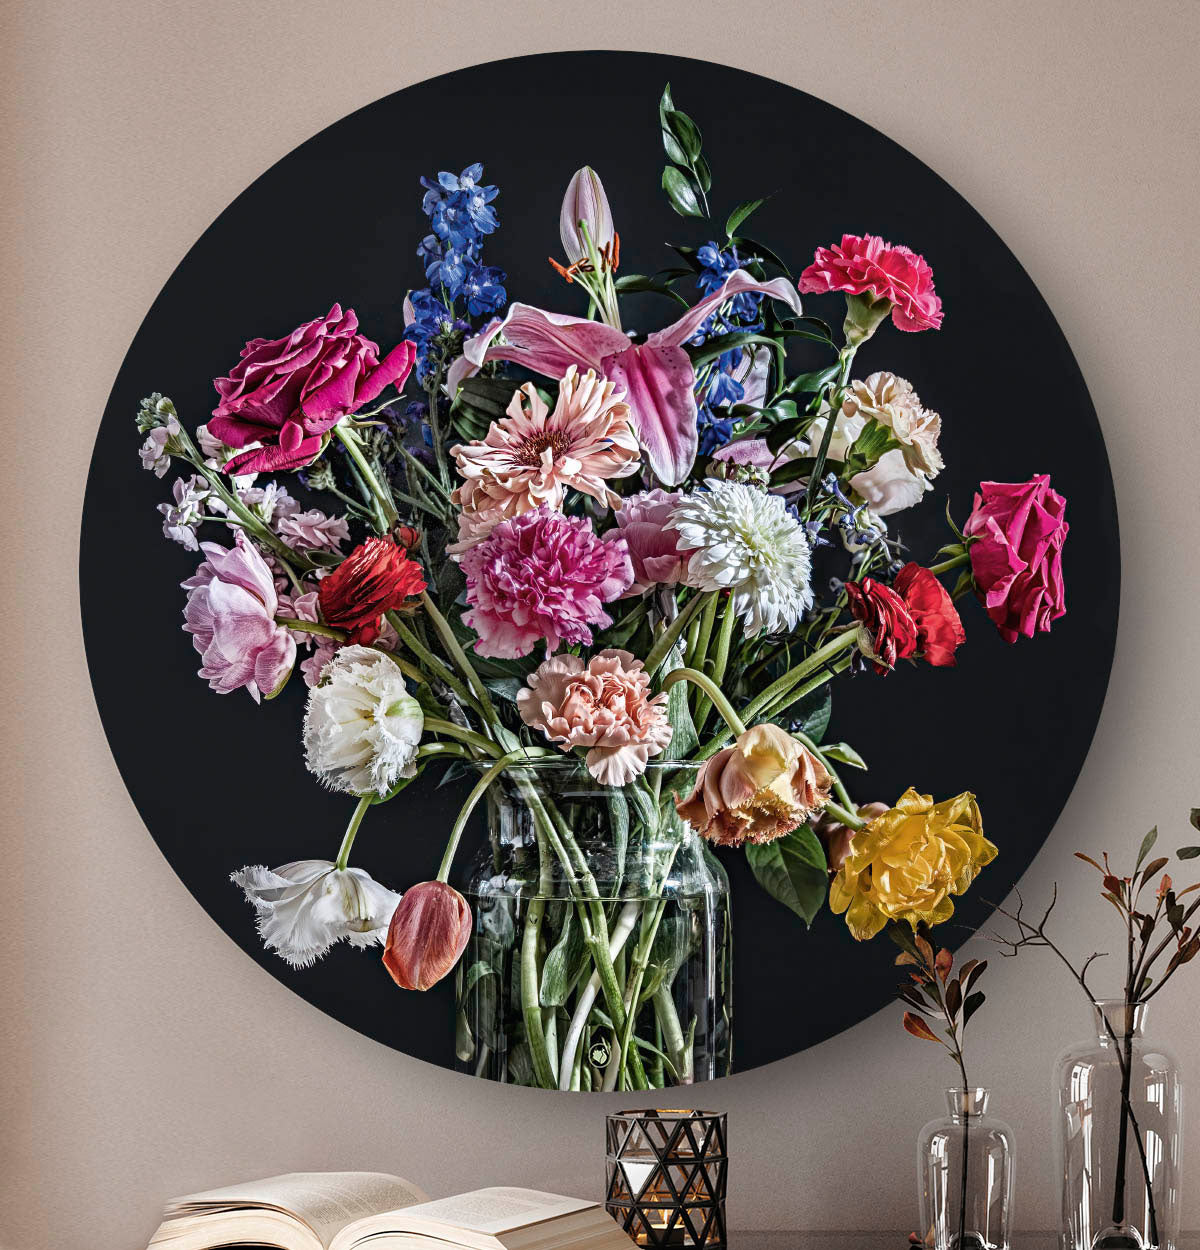 Wandcirkel met kleurrijke bloemen in een glazen vaas tegen een beige muur